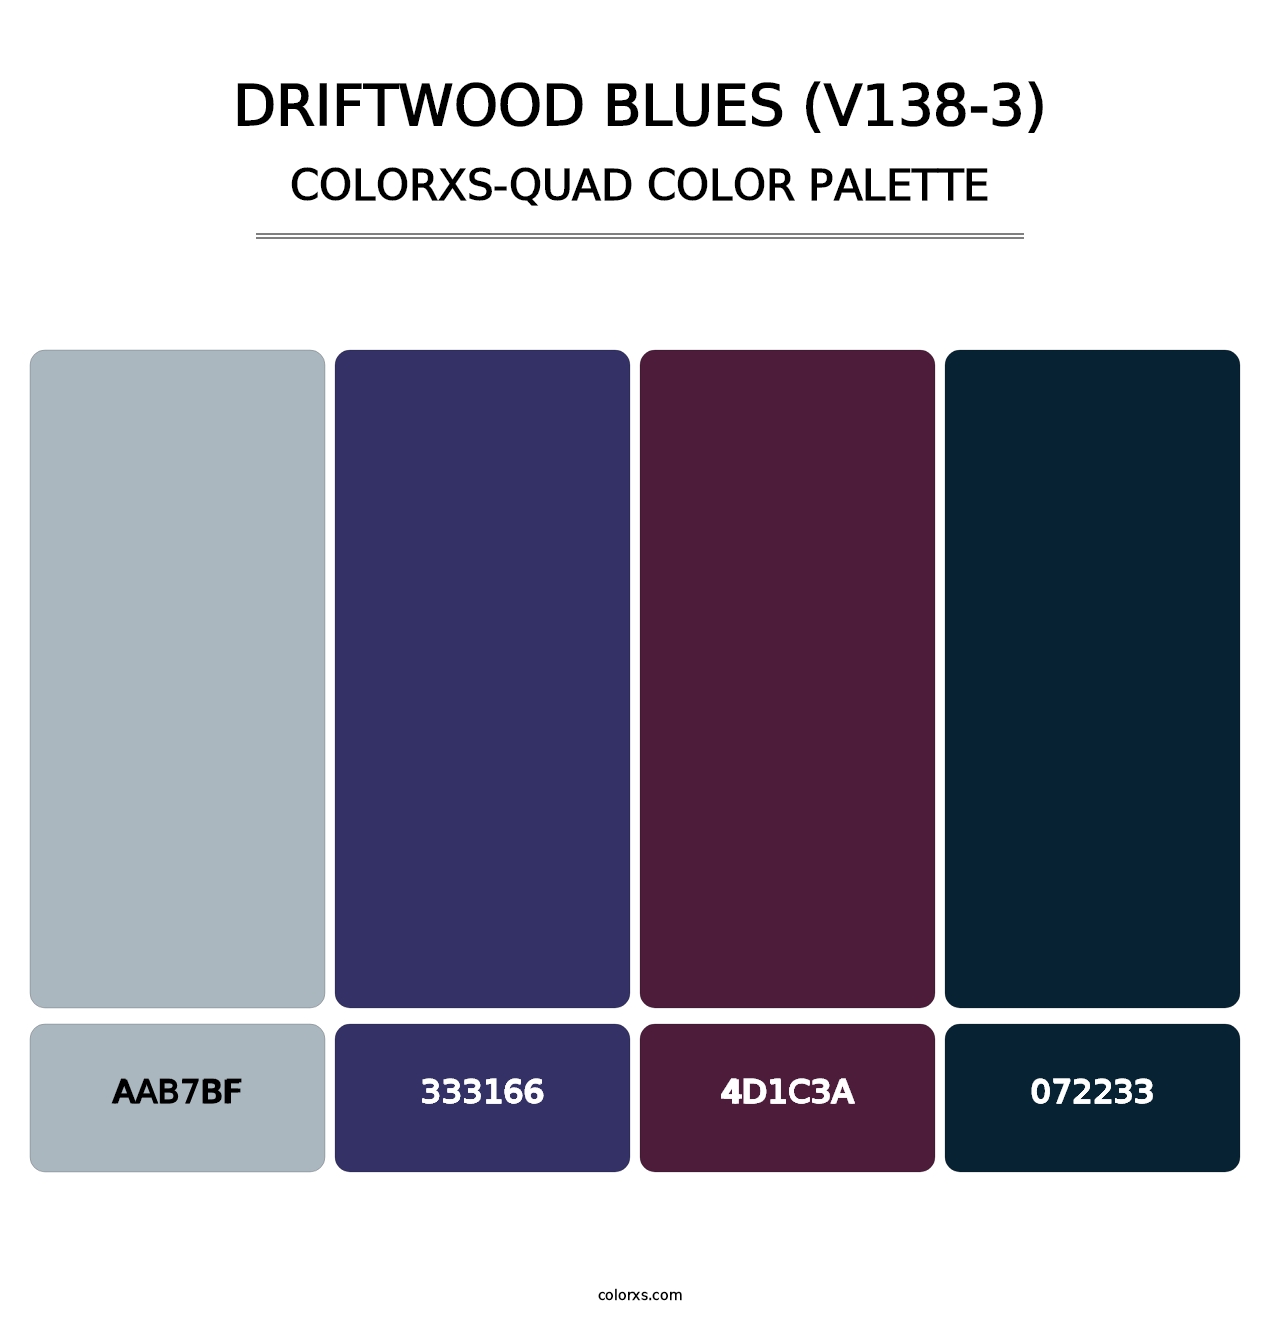 Driftwood Blues (V138-3) - Colorxs Quad Palette